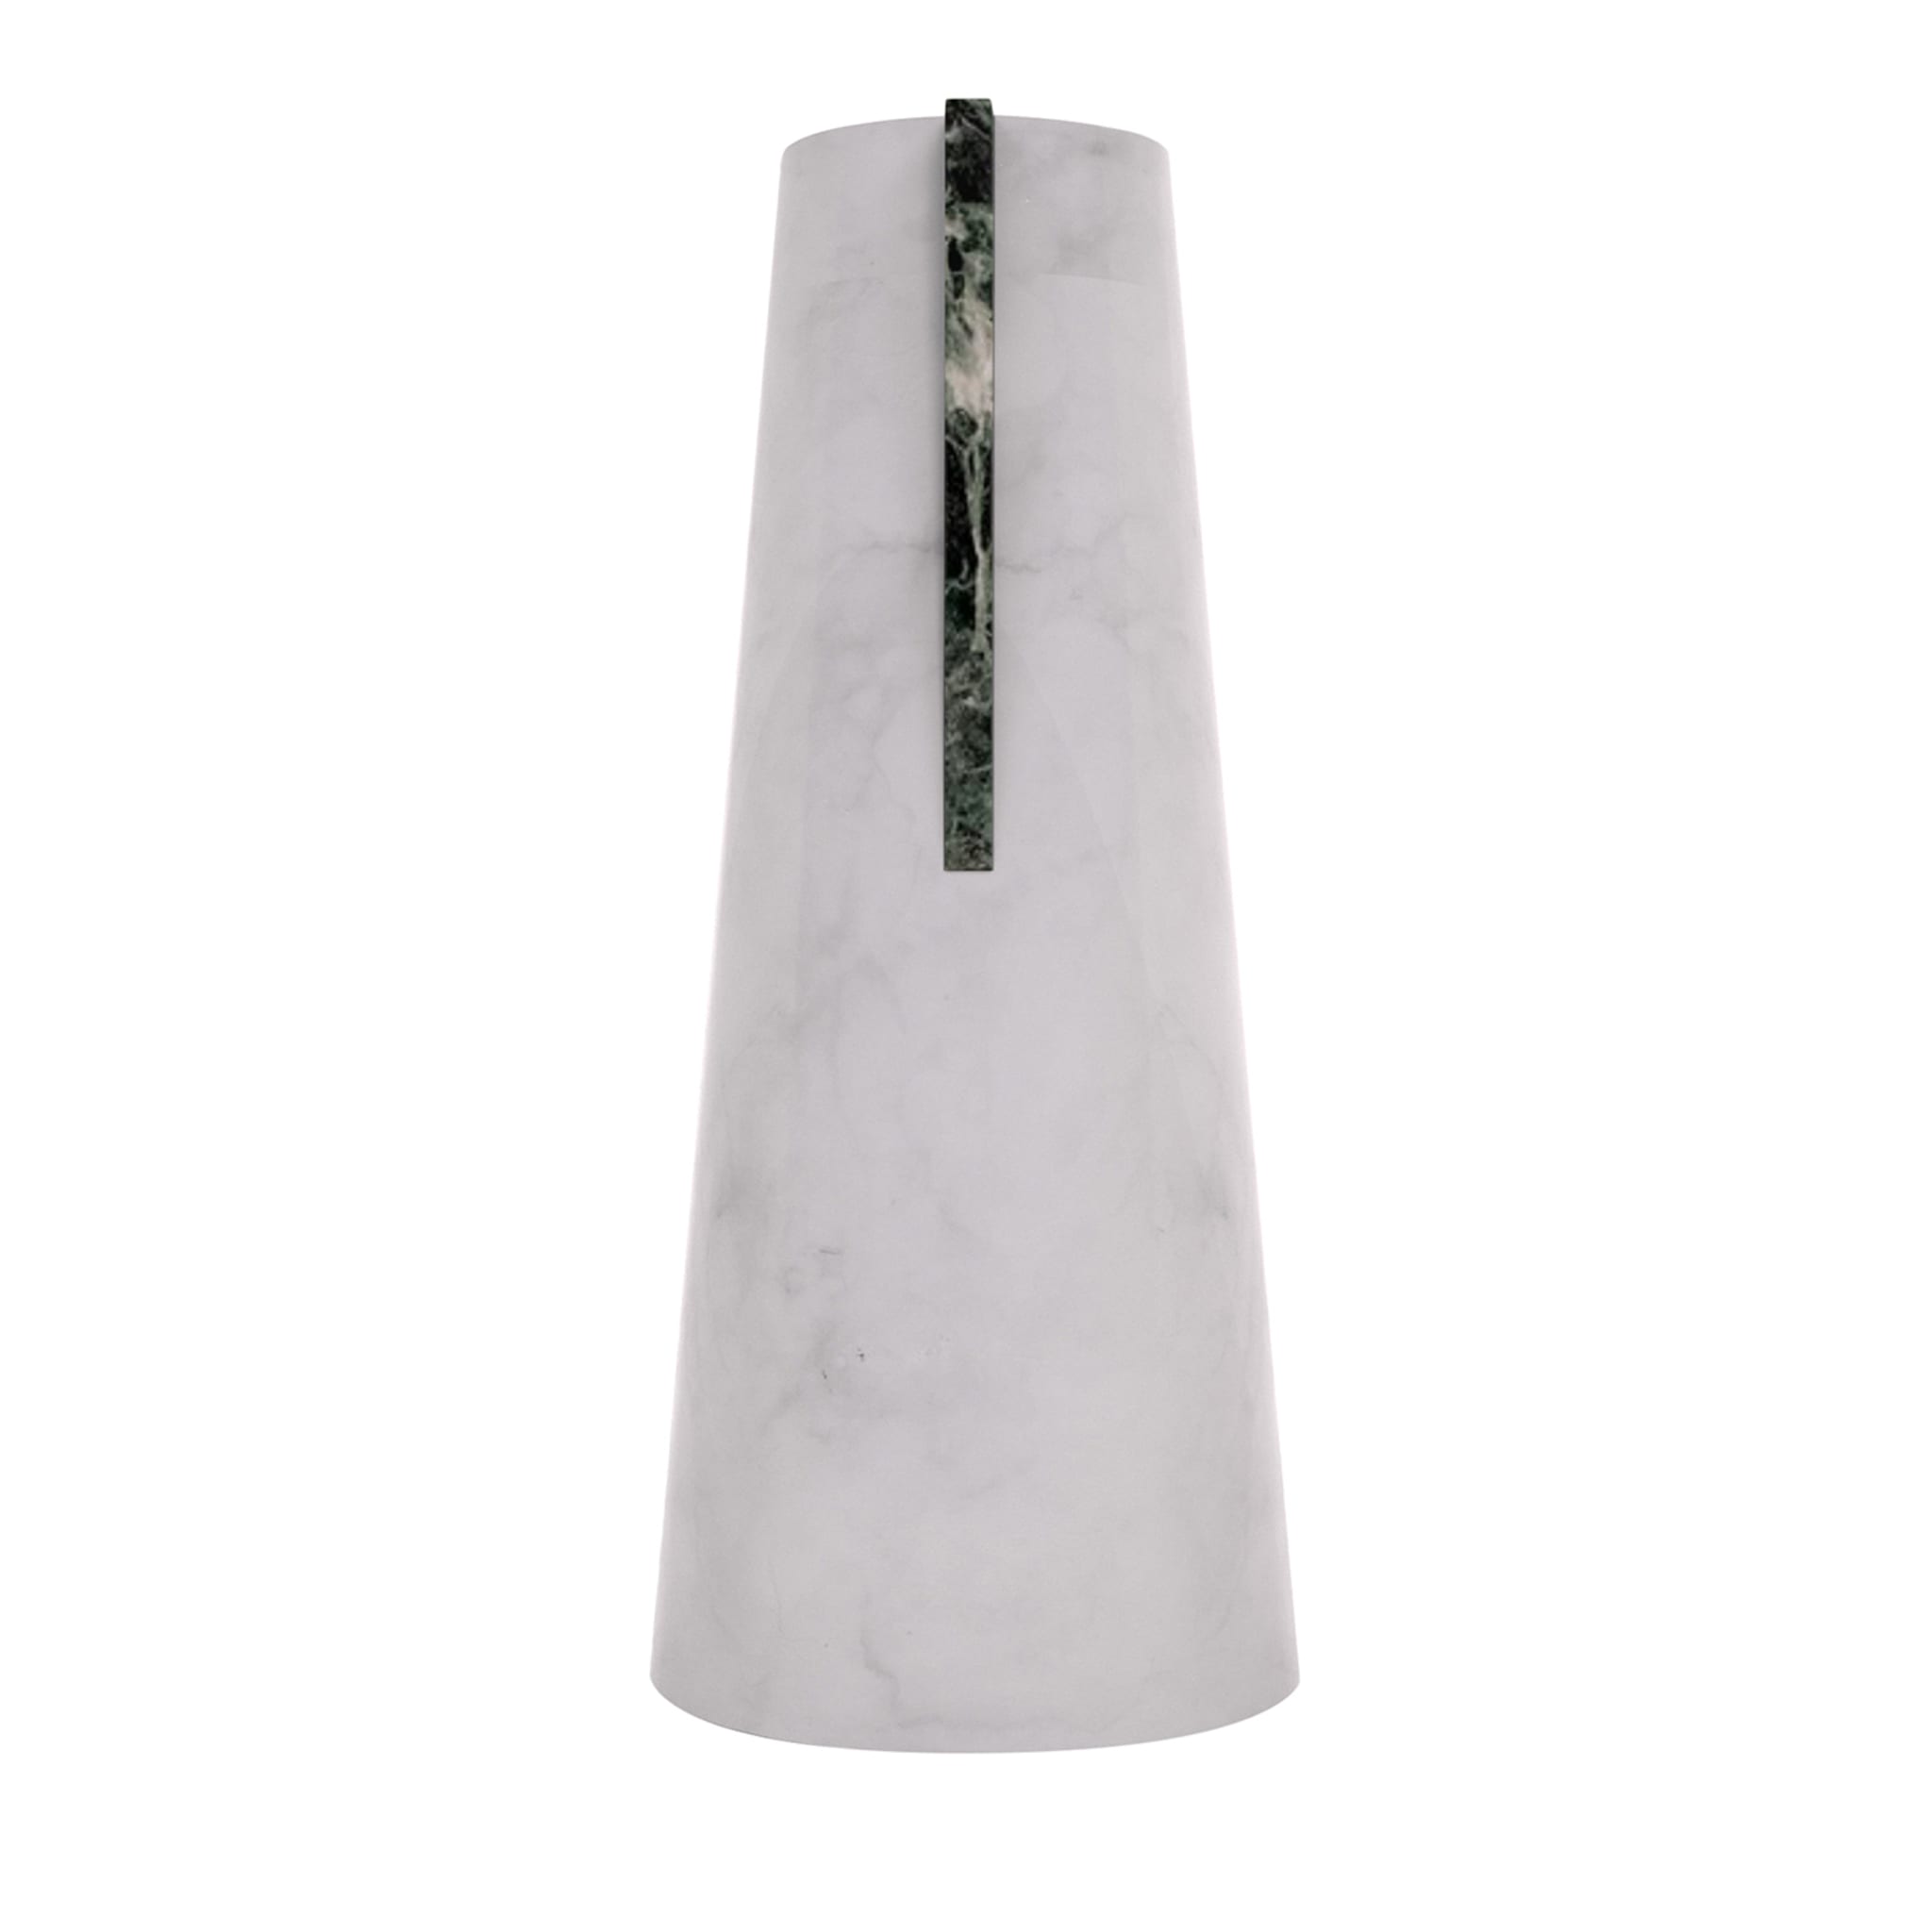 Elara White Carrara & Verde Alpi Vase - Main view